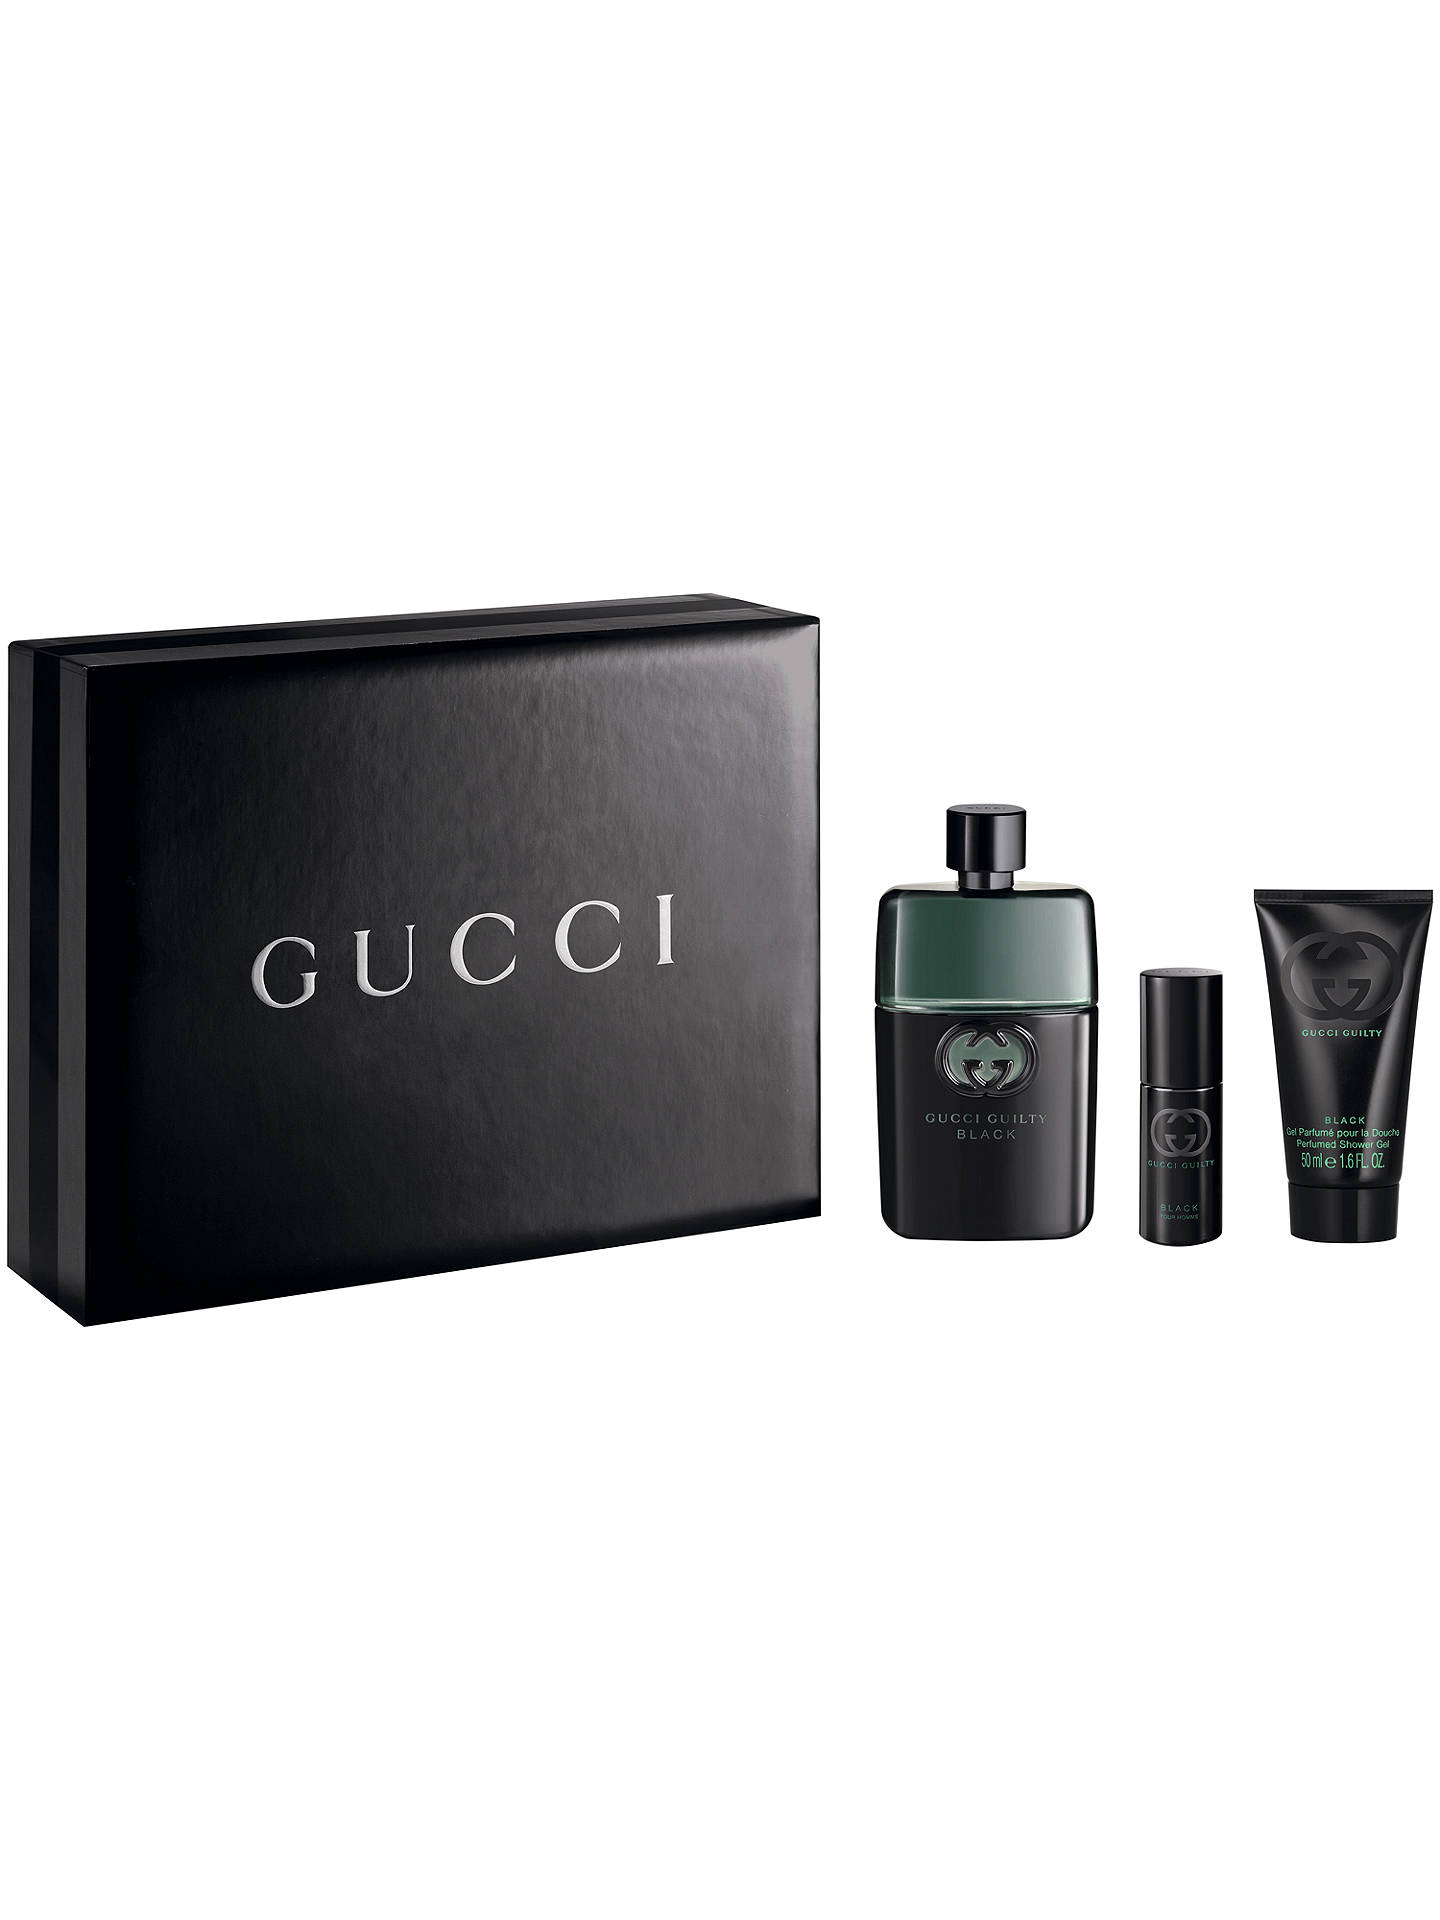 Gucci Guilty Black Pour Homme Eau de Toilette Gift Set at